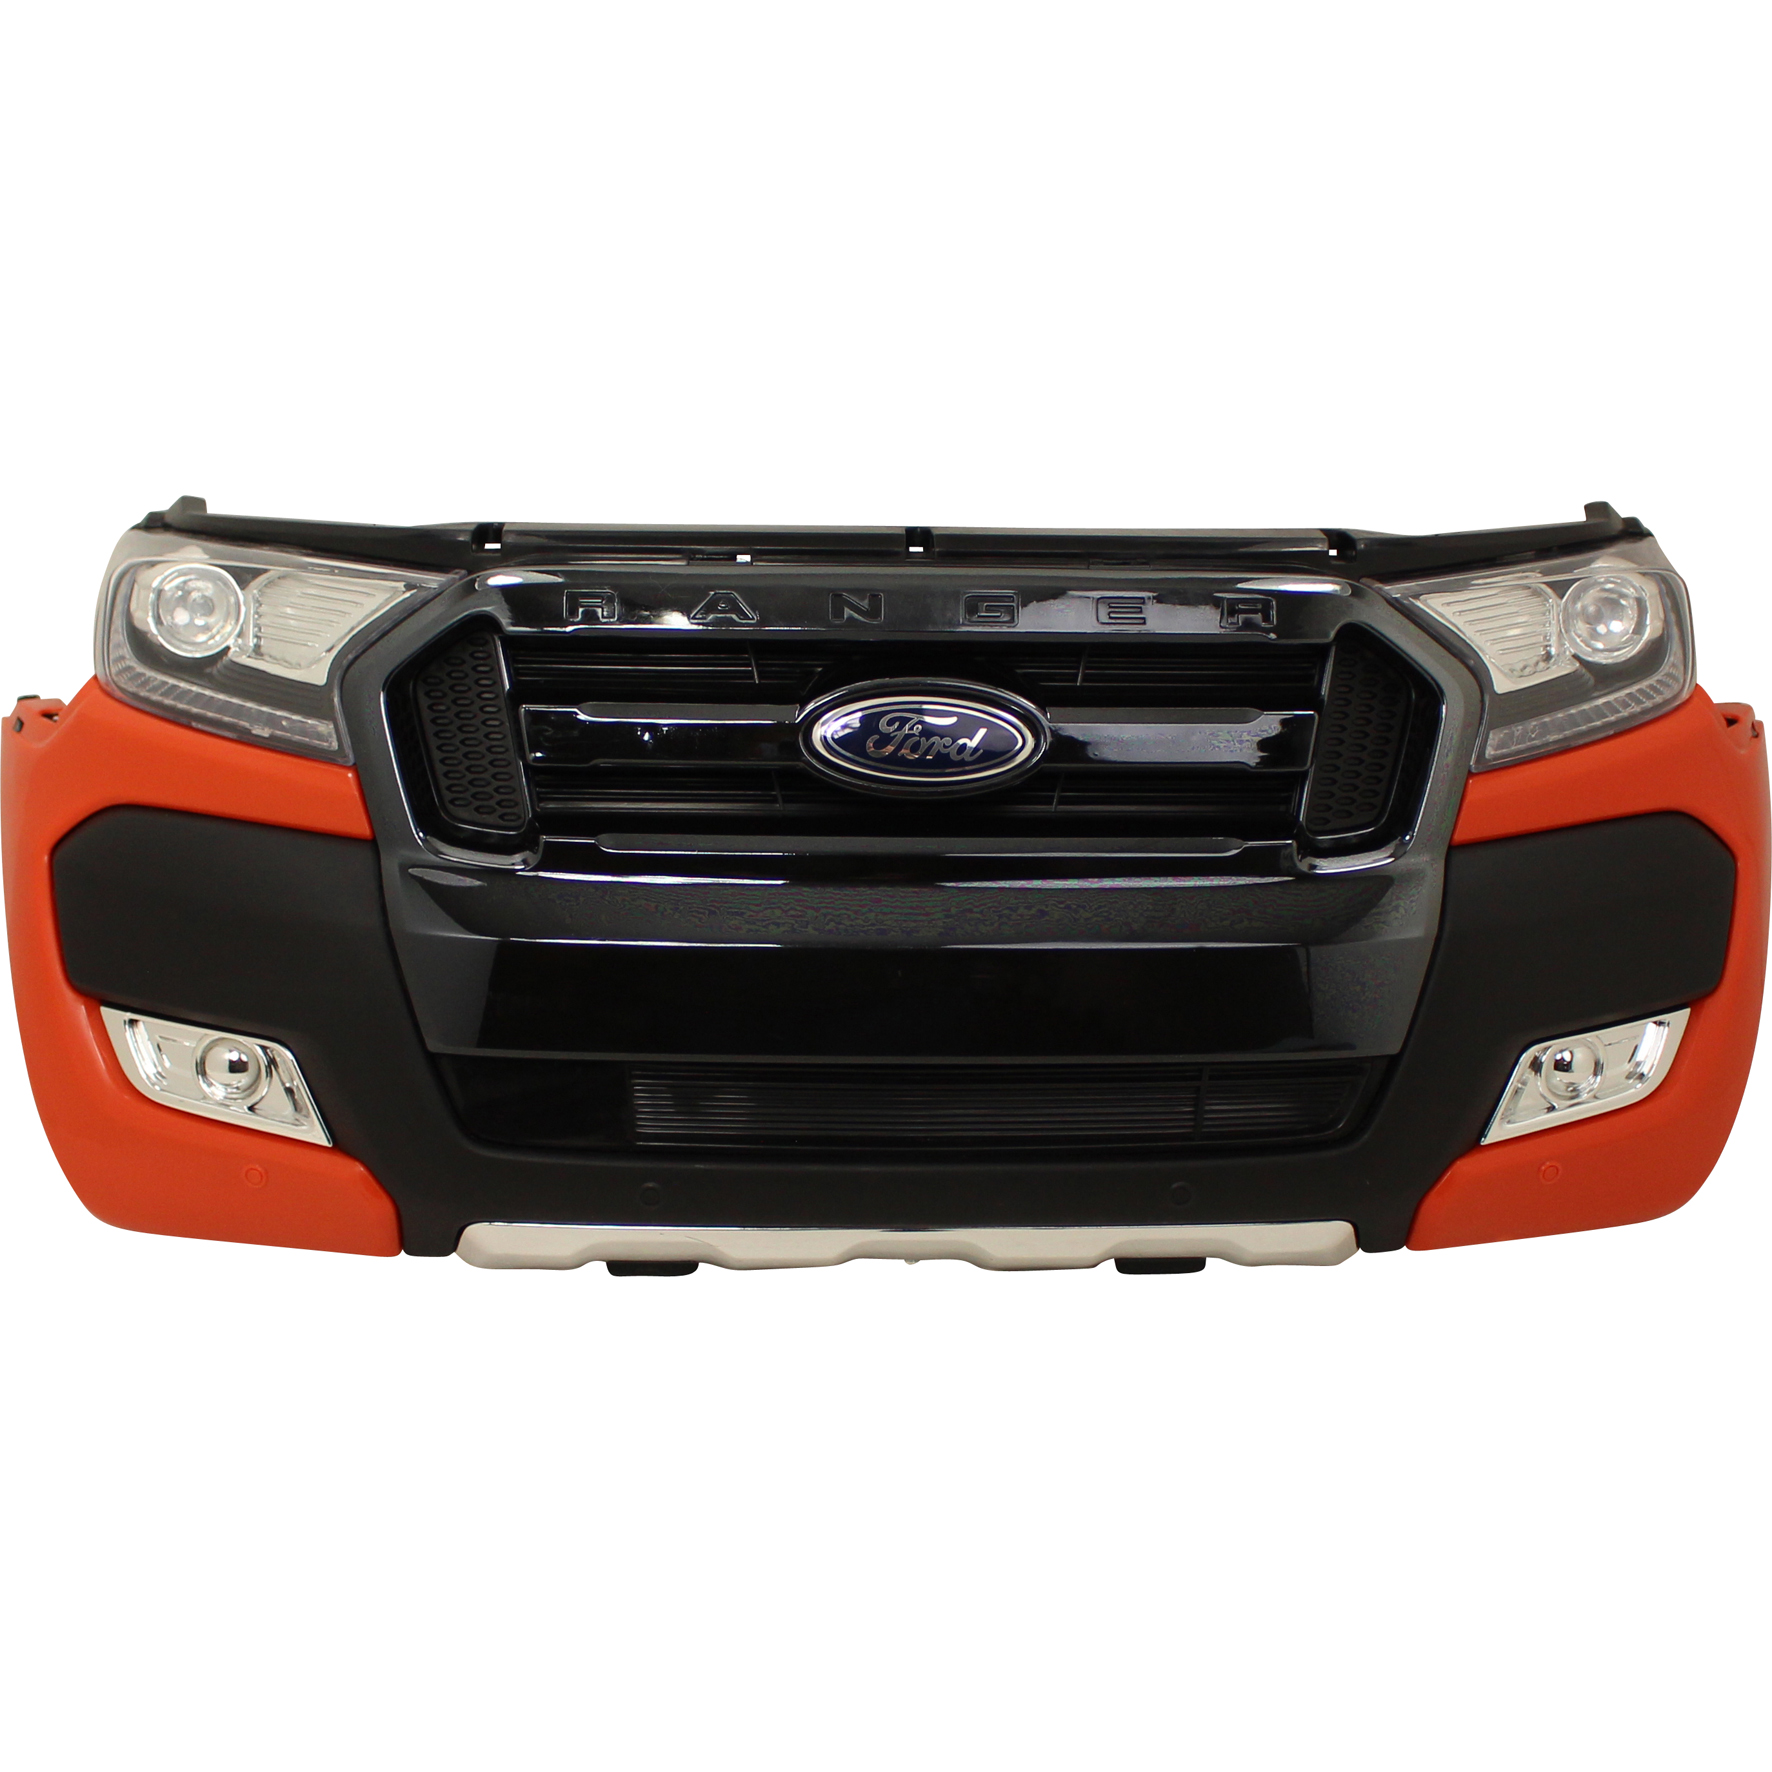 Elektroauto Ford Ranger Wildtrak Verkleidung vorne / Frontstoßstange